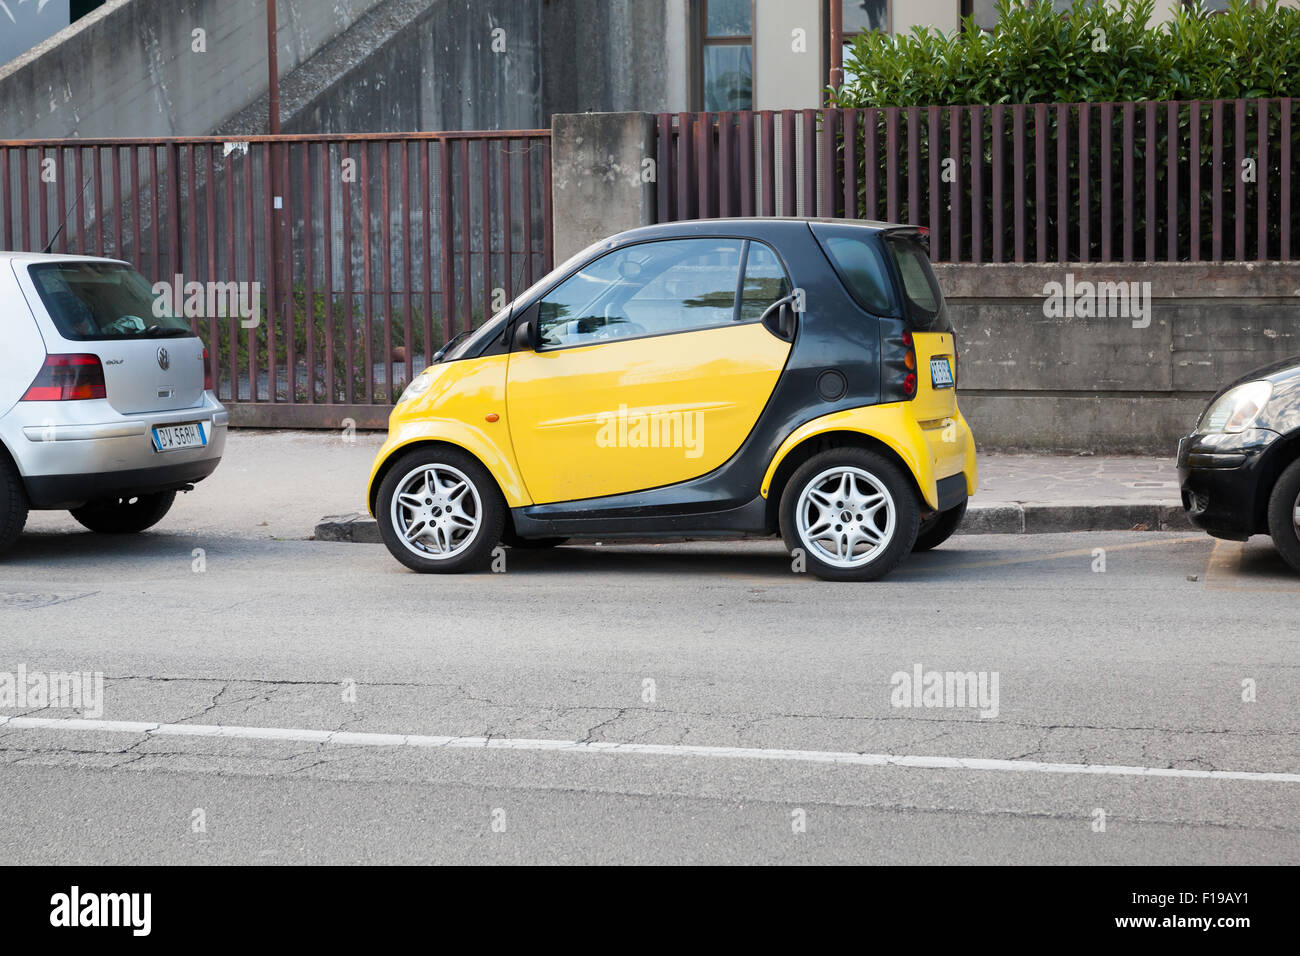 Gaeta, Italia - 24 agosto 2015: nero e giallo Smart auto parcheggiate su strada urbana Foto Stock